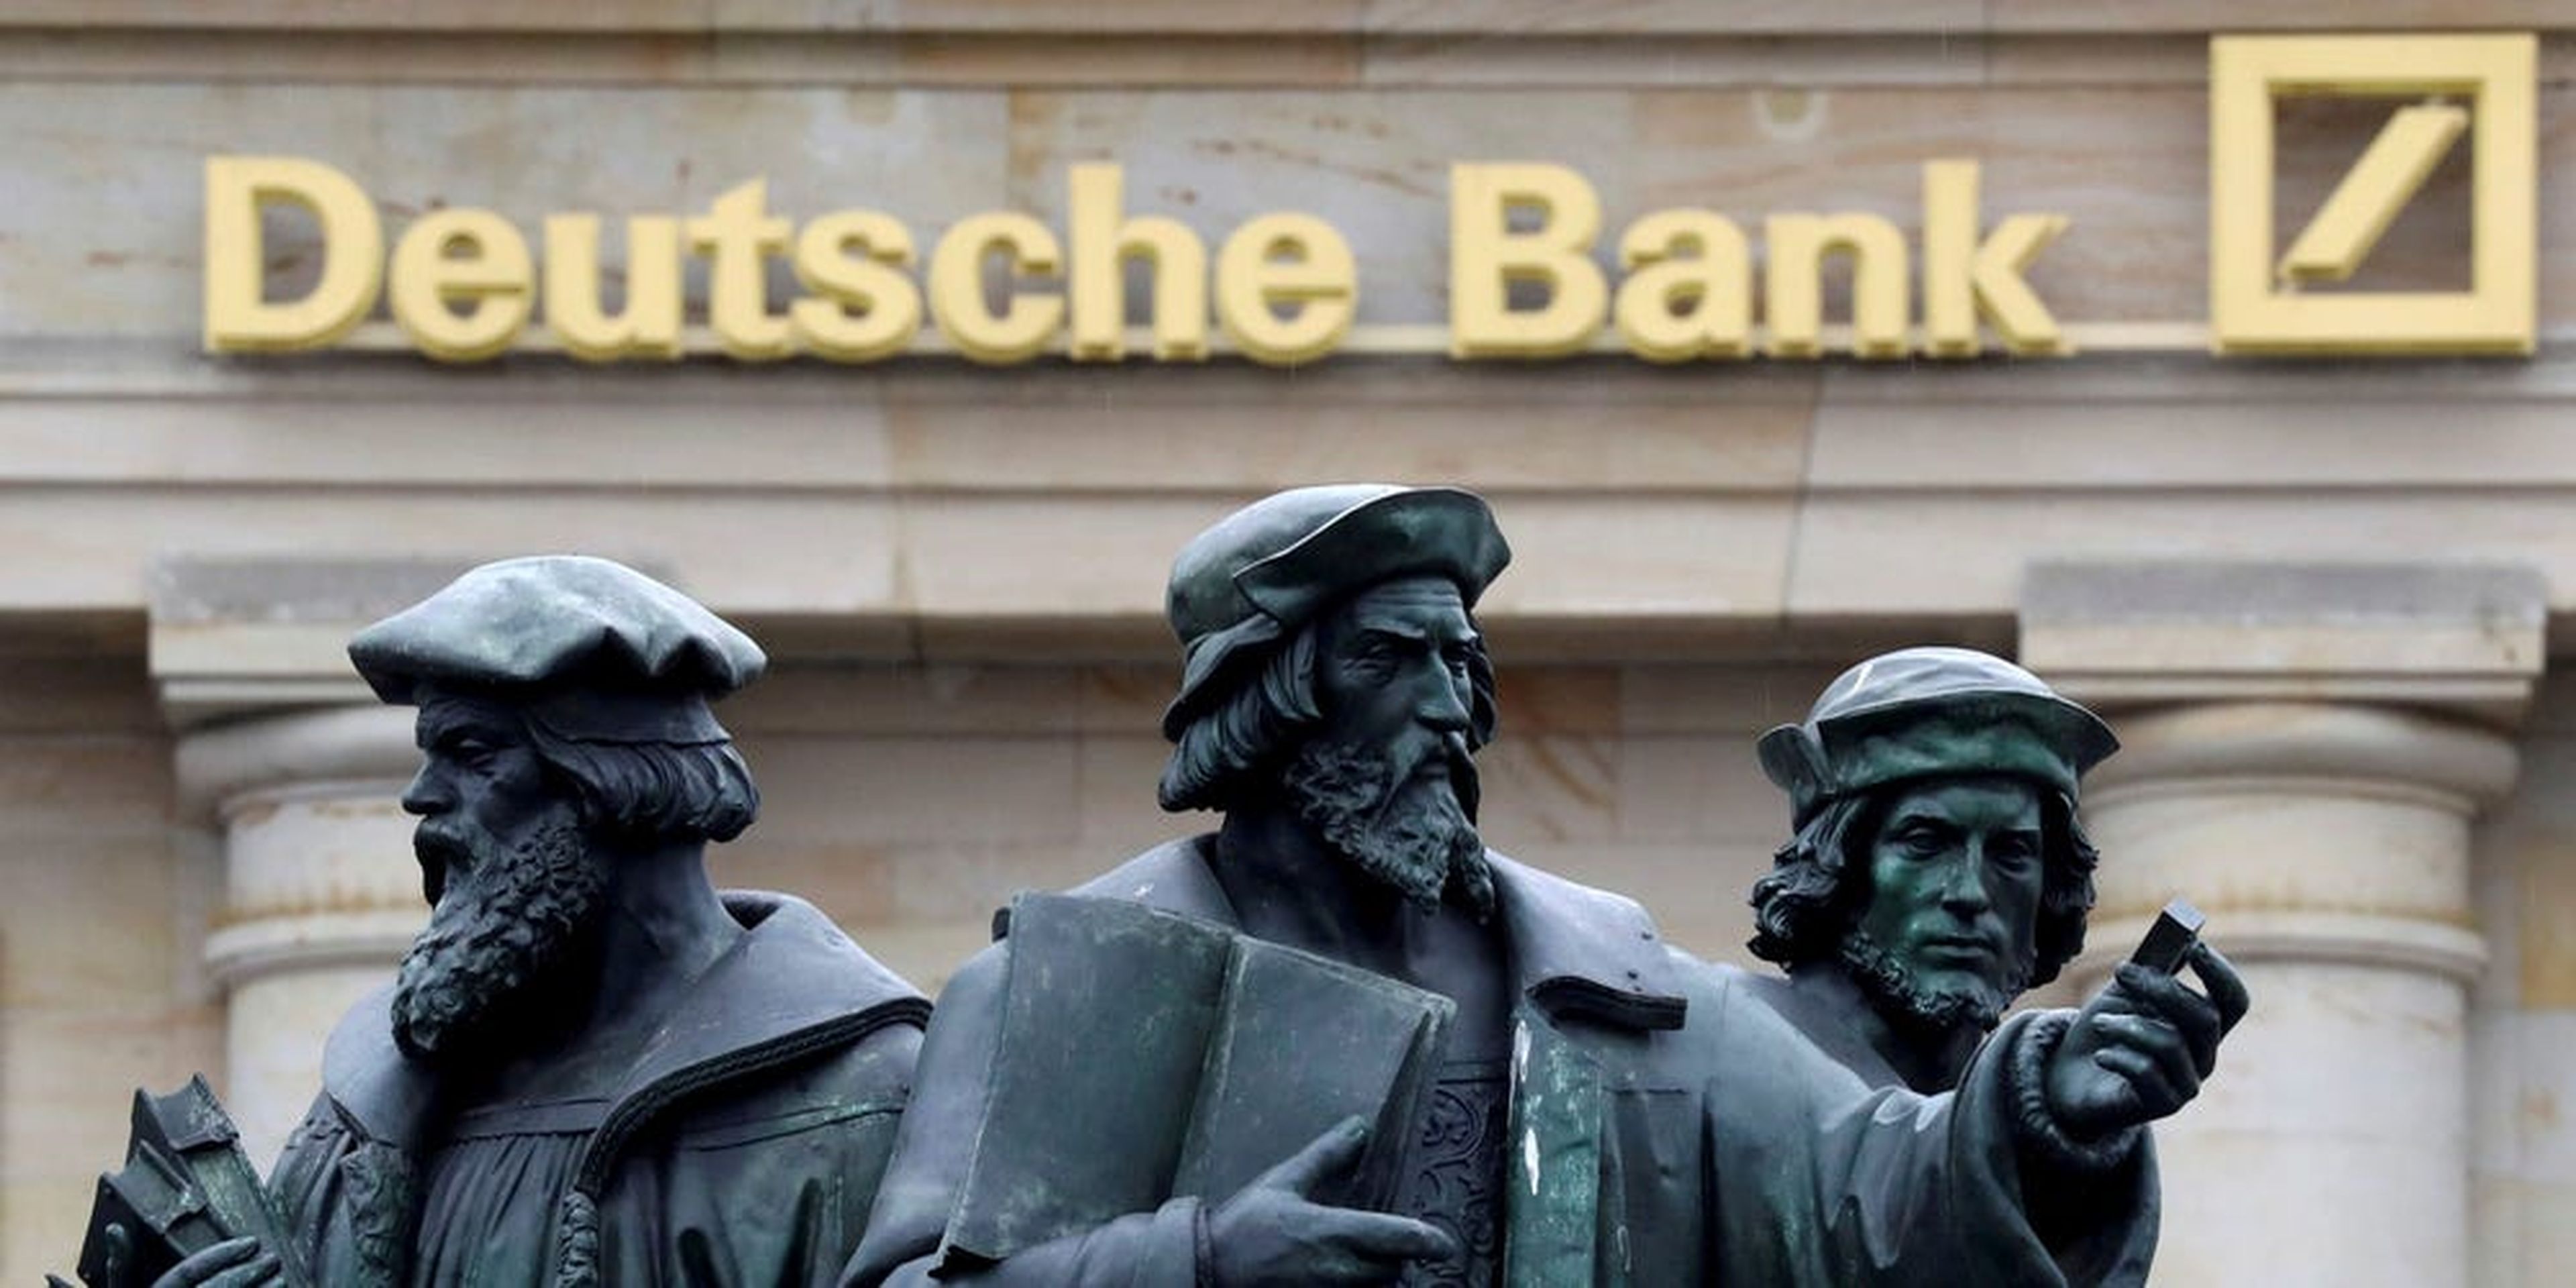 Una estatua junto al logotipo del Deutsche Bank de Alemania en Frankfurt.